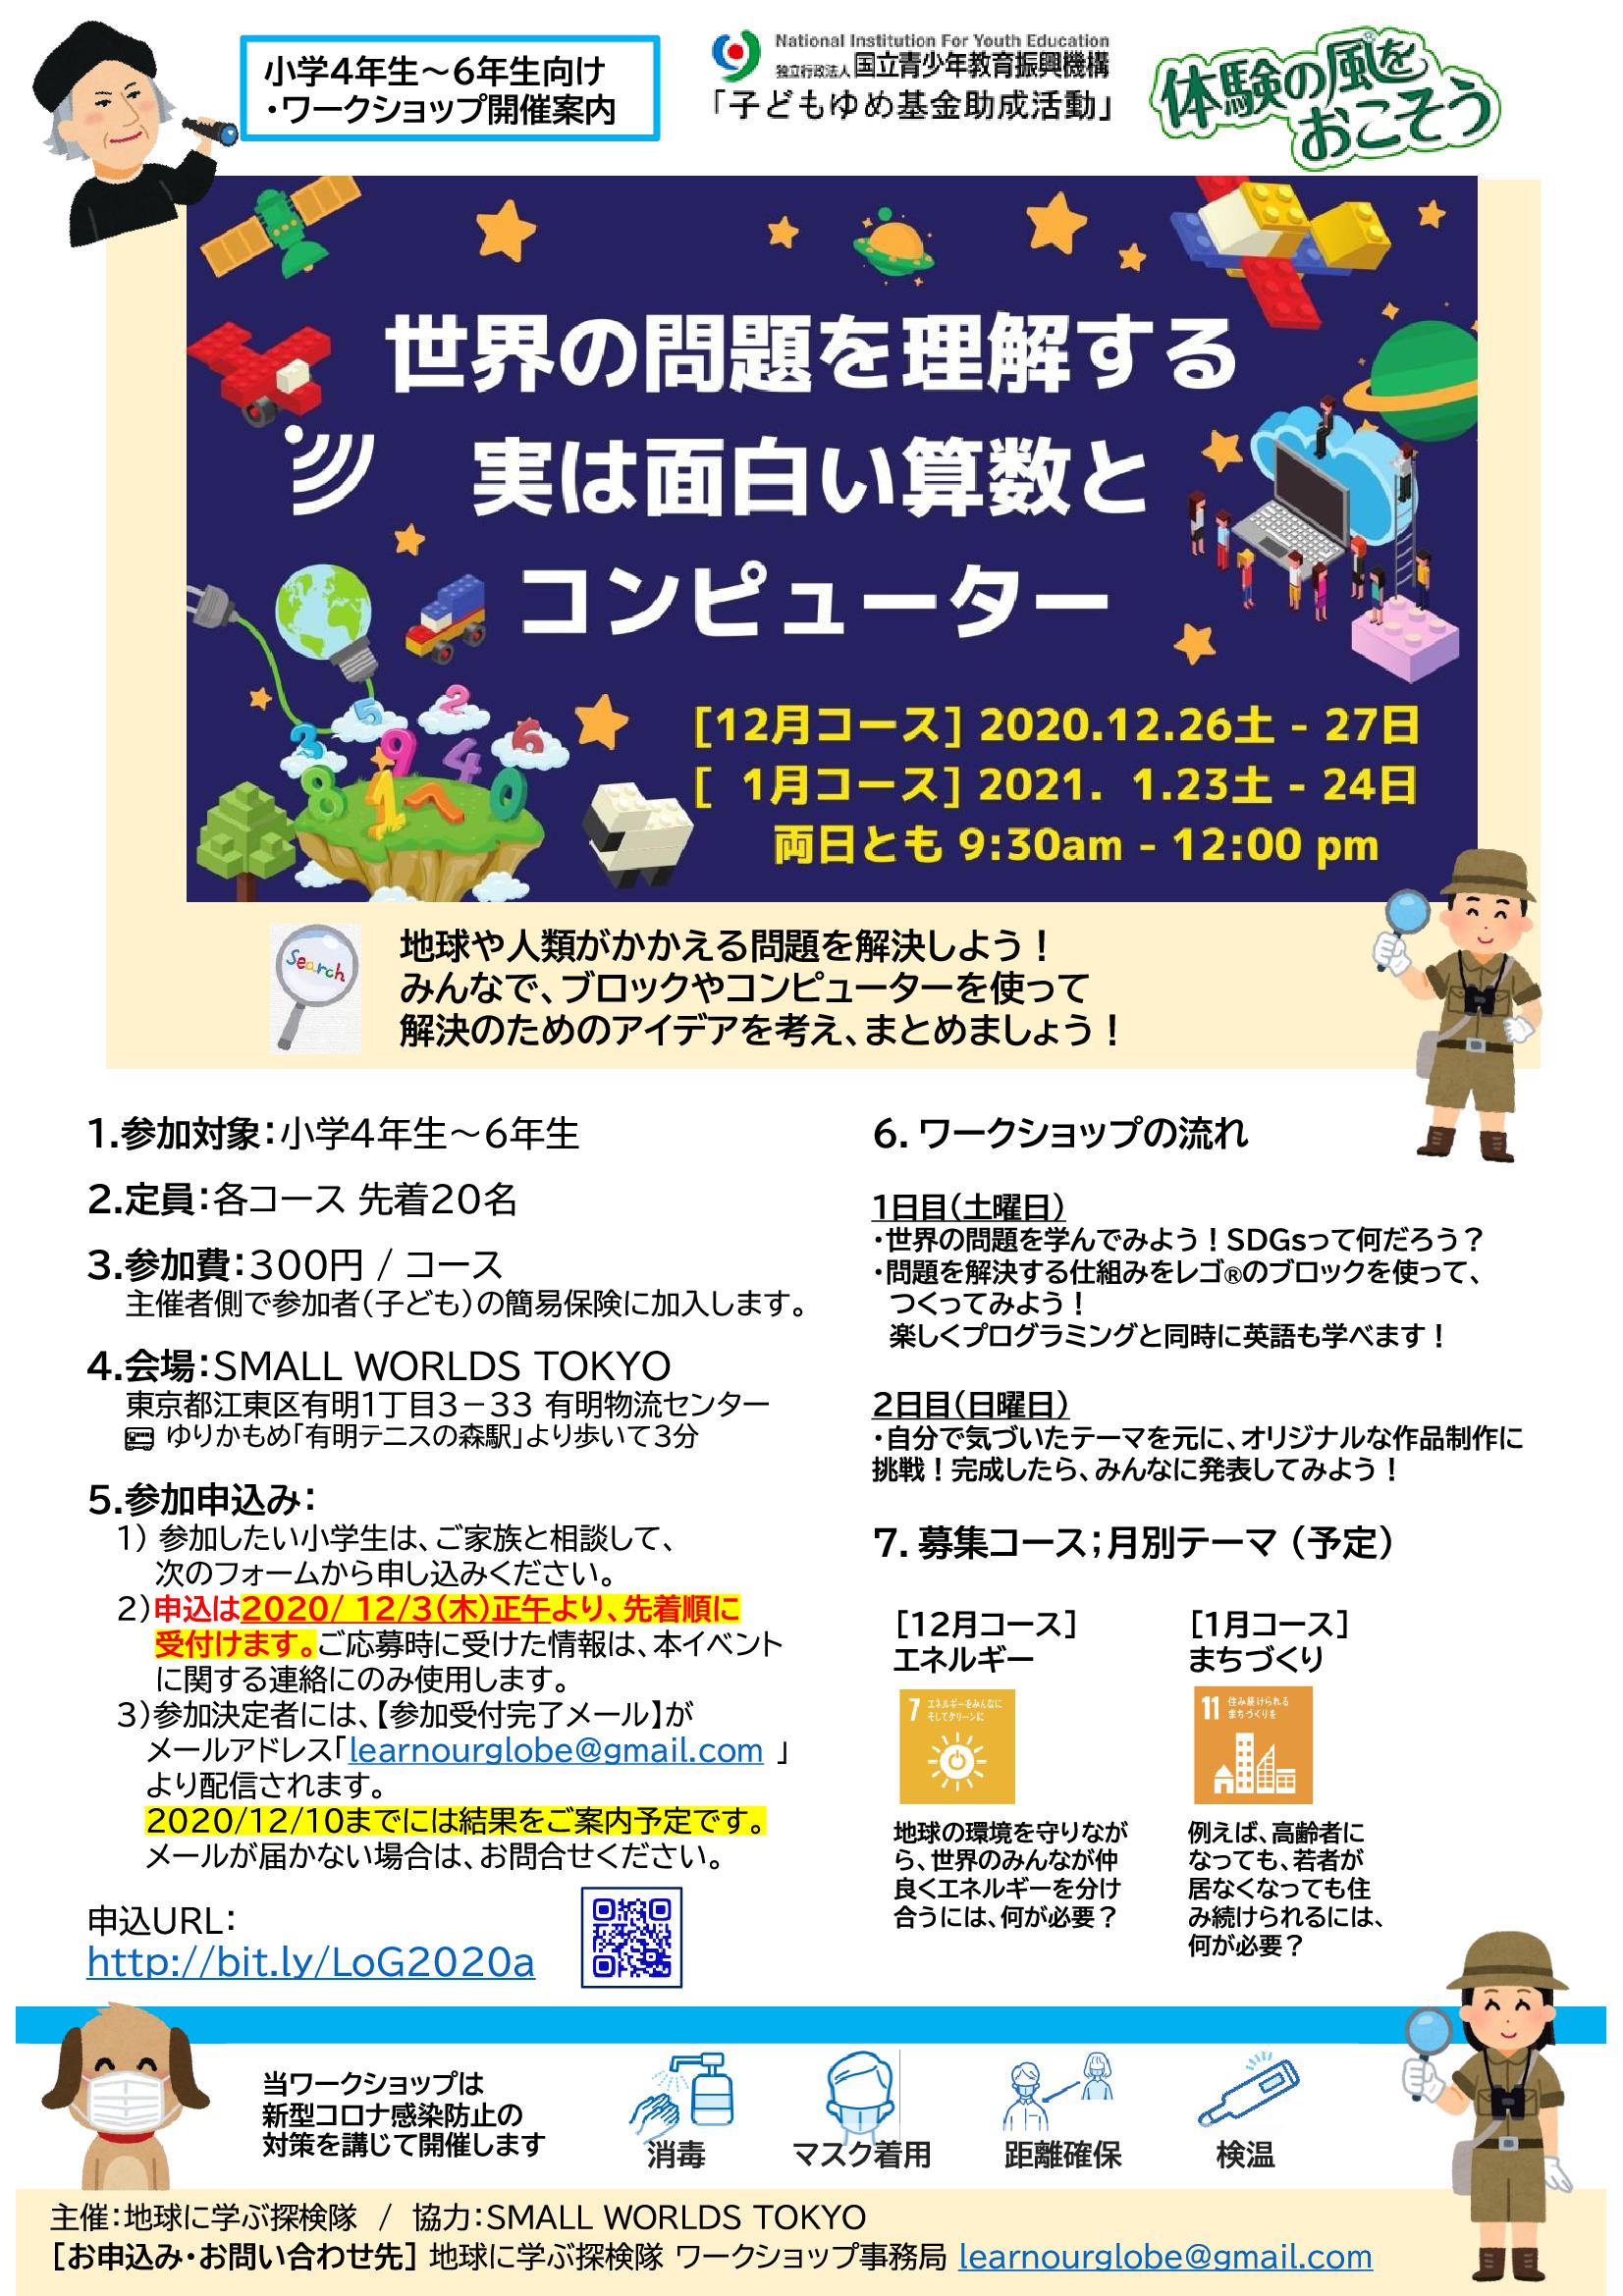 終了 Small Worlds Tokyo ワークショップ 世界の問題を理解する 実はおもしろい算数とコンピューター イベント 江東おでかけ情報局